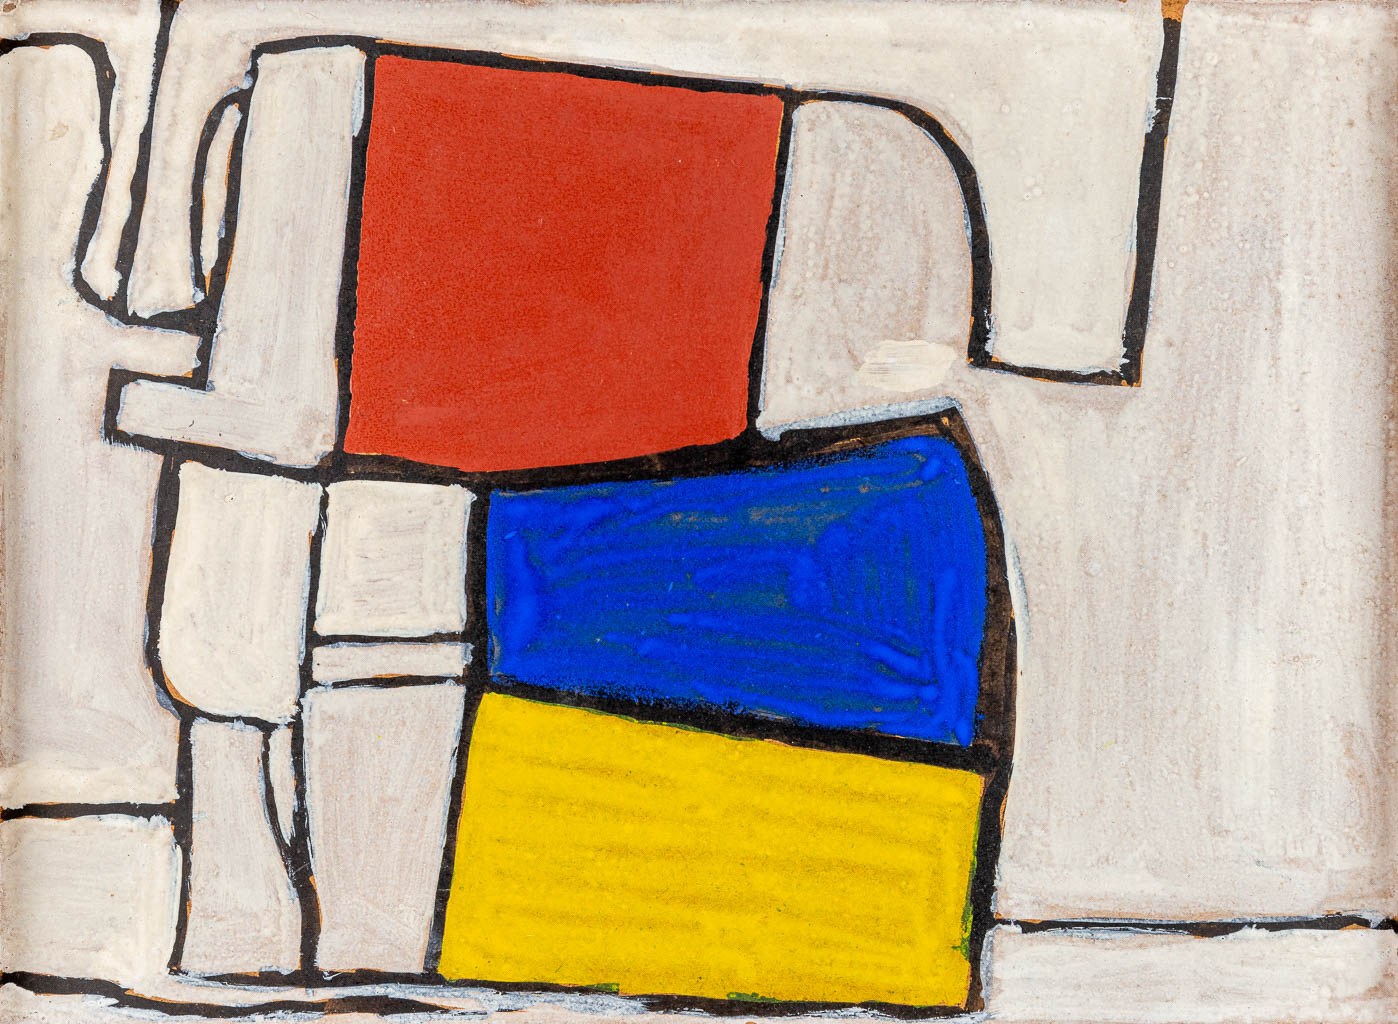 Mario DE BRABANDERE (1963) 'Stilleven met houten blokken' oil on panel. 1999 (W:24,5 x H:32,5 cm)